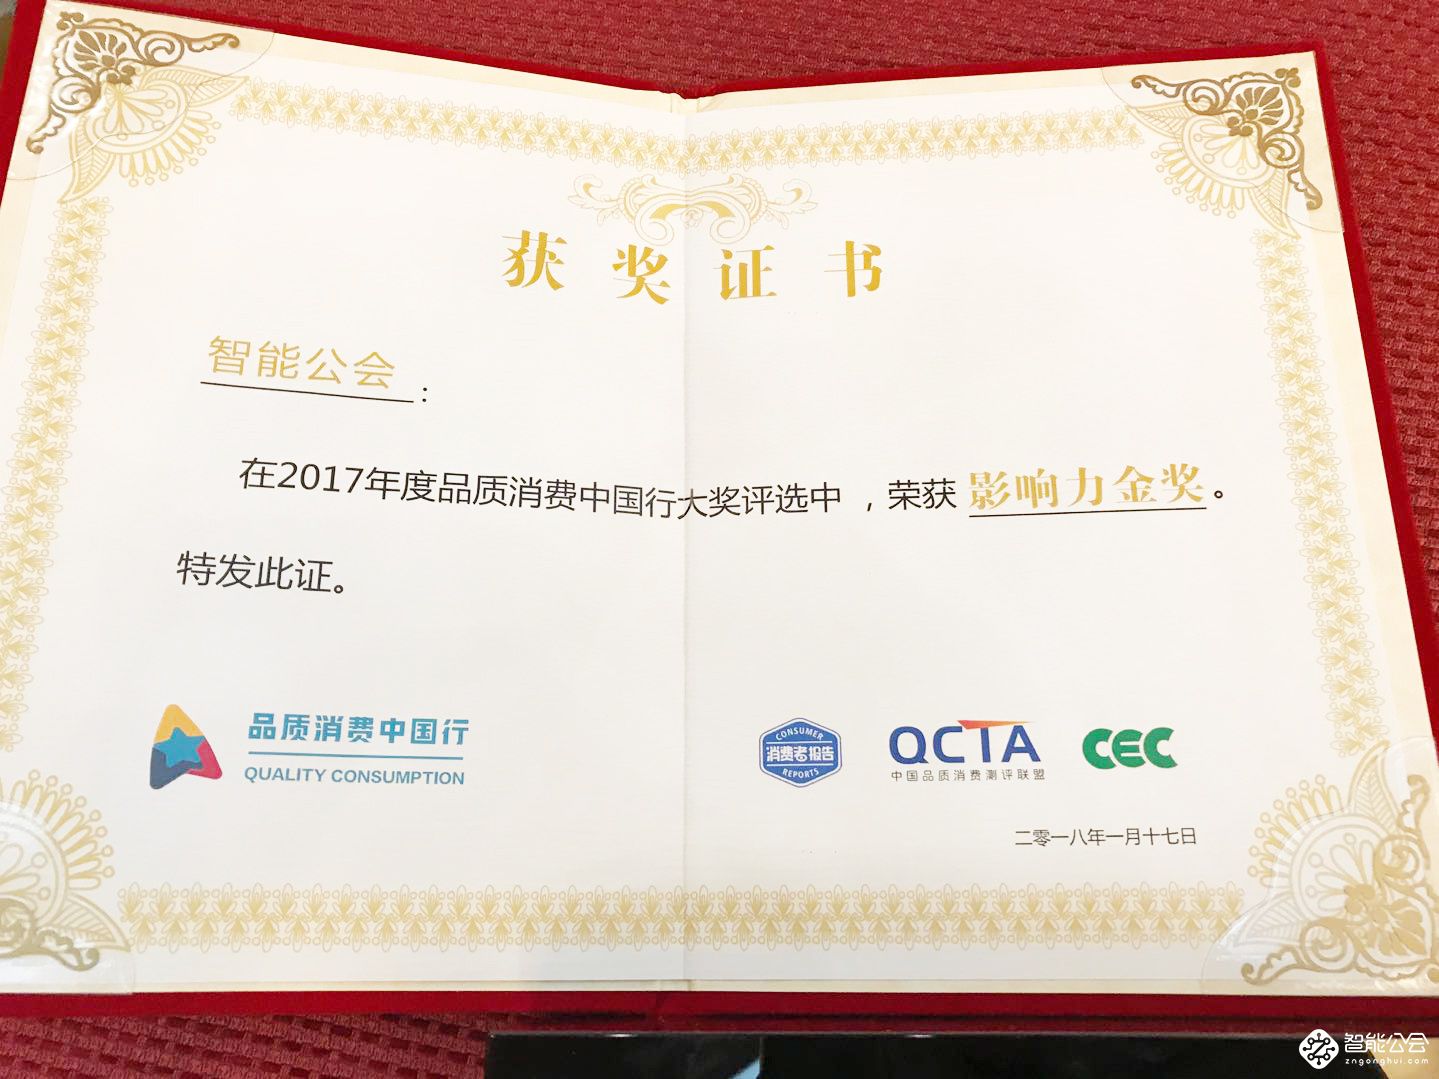 品质超越国标 品质消费中国行2017年度大奖在京揭晓 智能公会